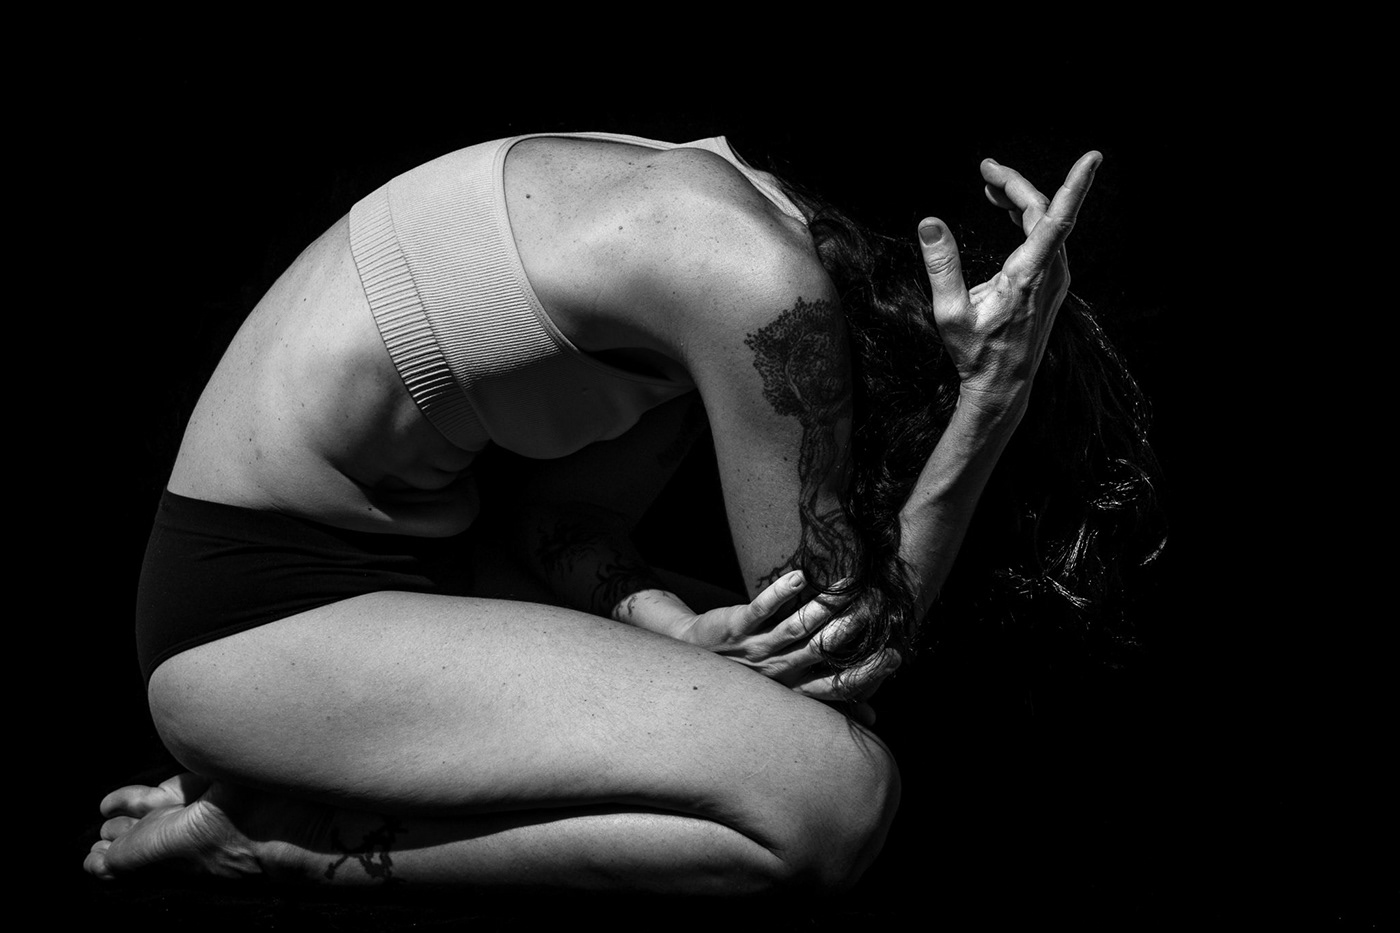 ensaio fotográfico fotografia de danca fotografia de studio retrato feminino